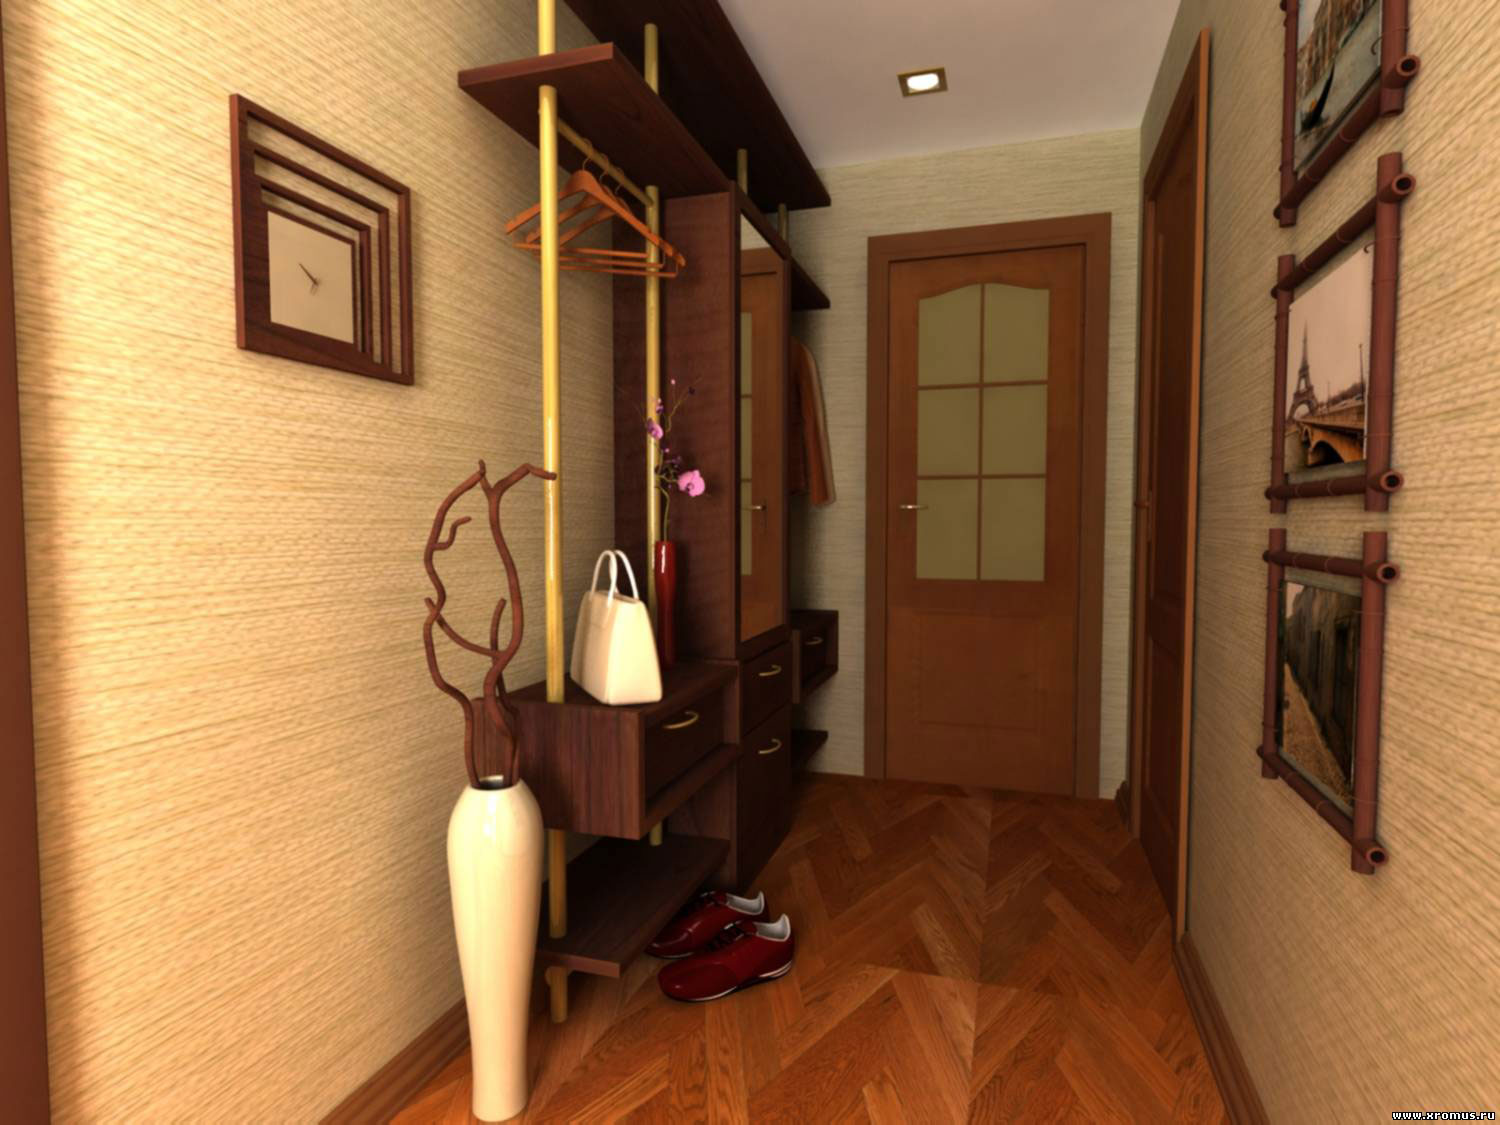 Idées de design de papier peint pour un couloir de style strict et classique dans l'appartement